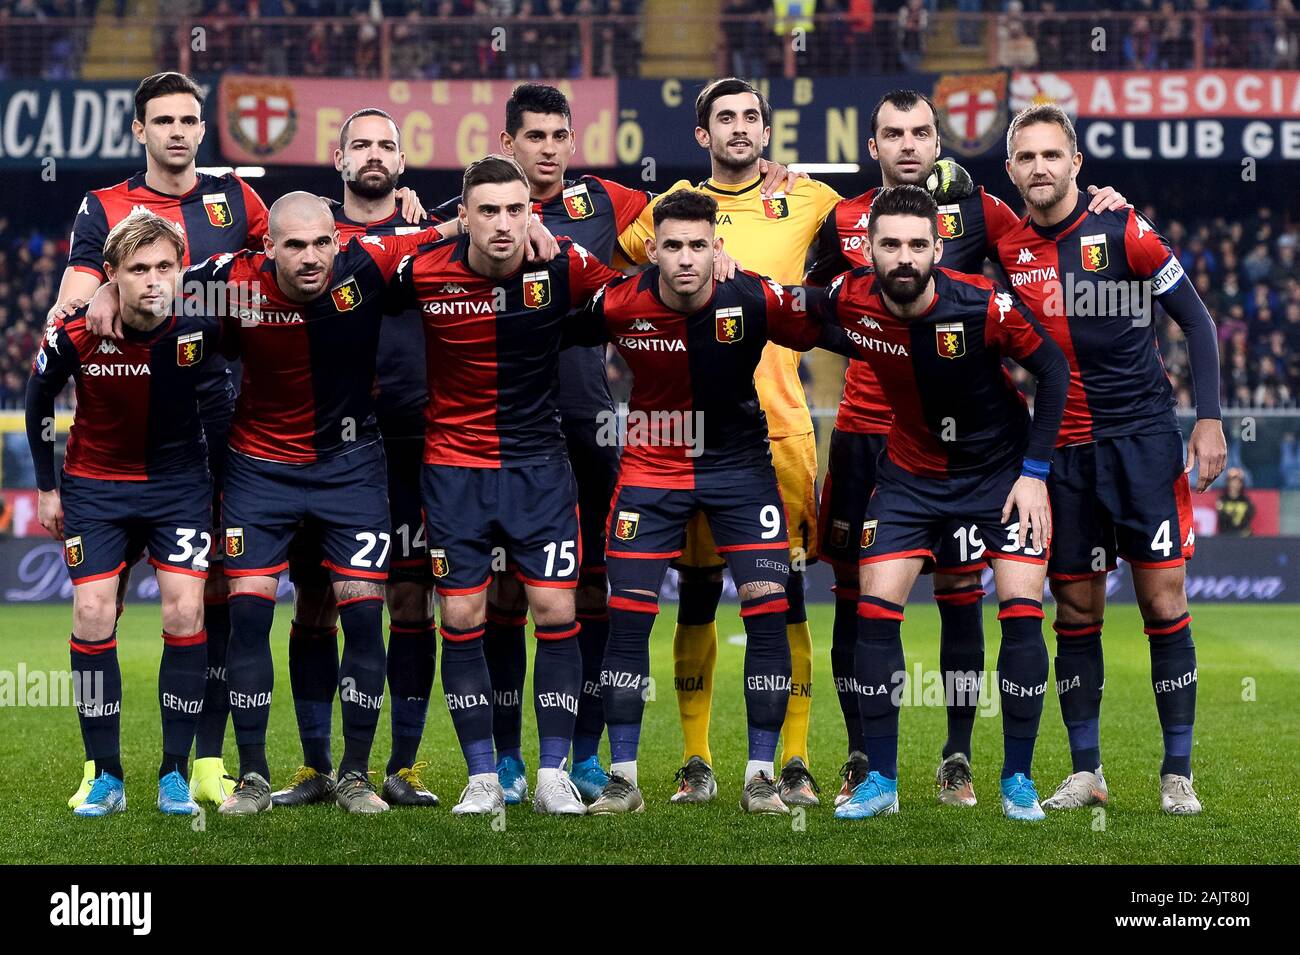 Genova, Italia - 05 January, 2020: i giocatori del Genoa CFC posano per una  foto del team prima della serie di una partita di calcio tra il Genoa CFC e  noi di